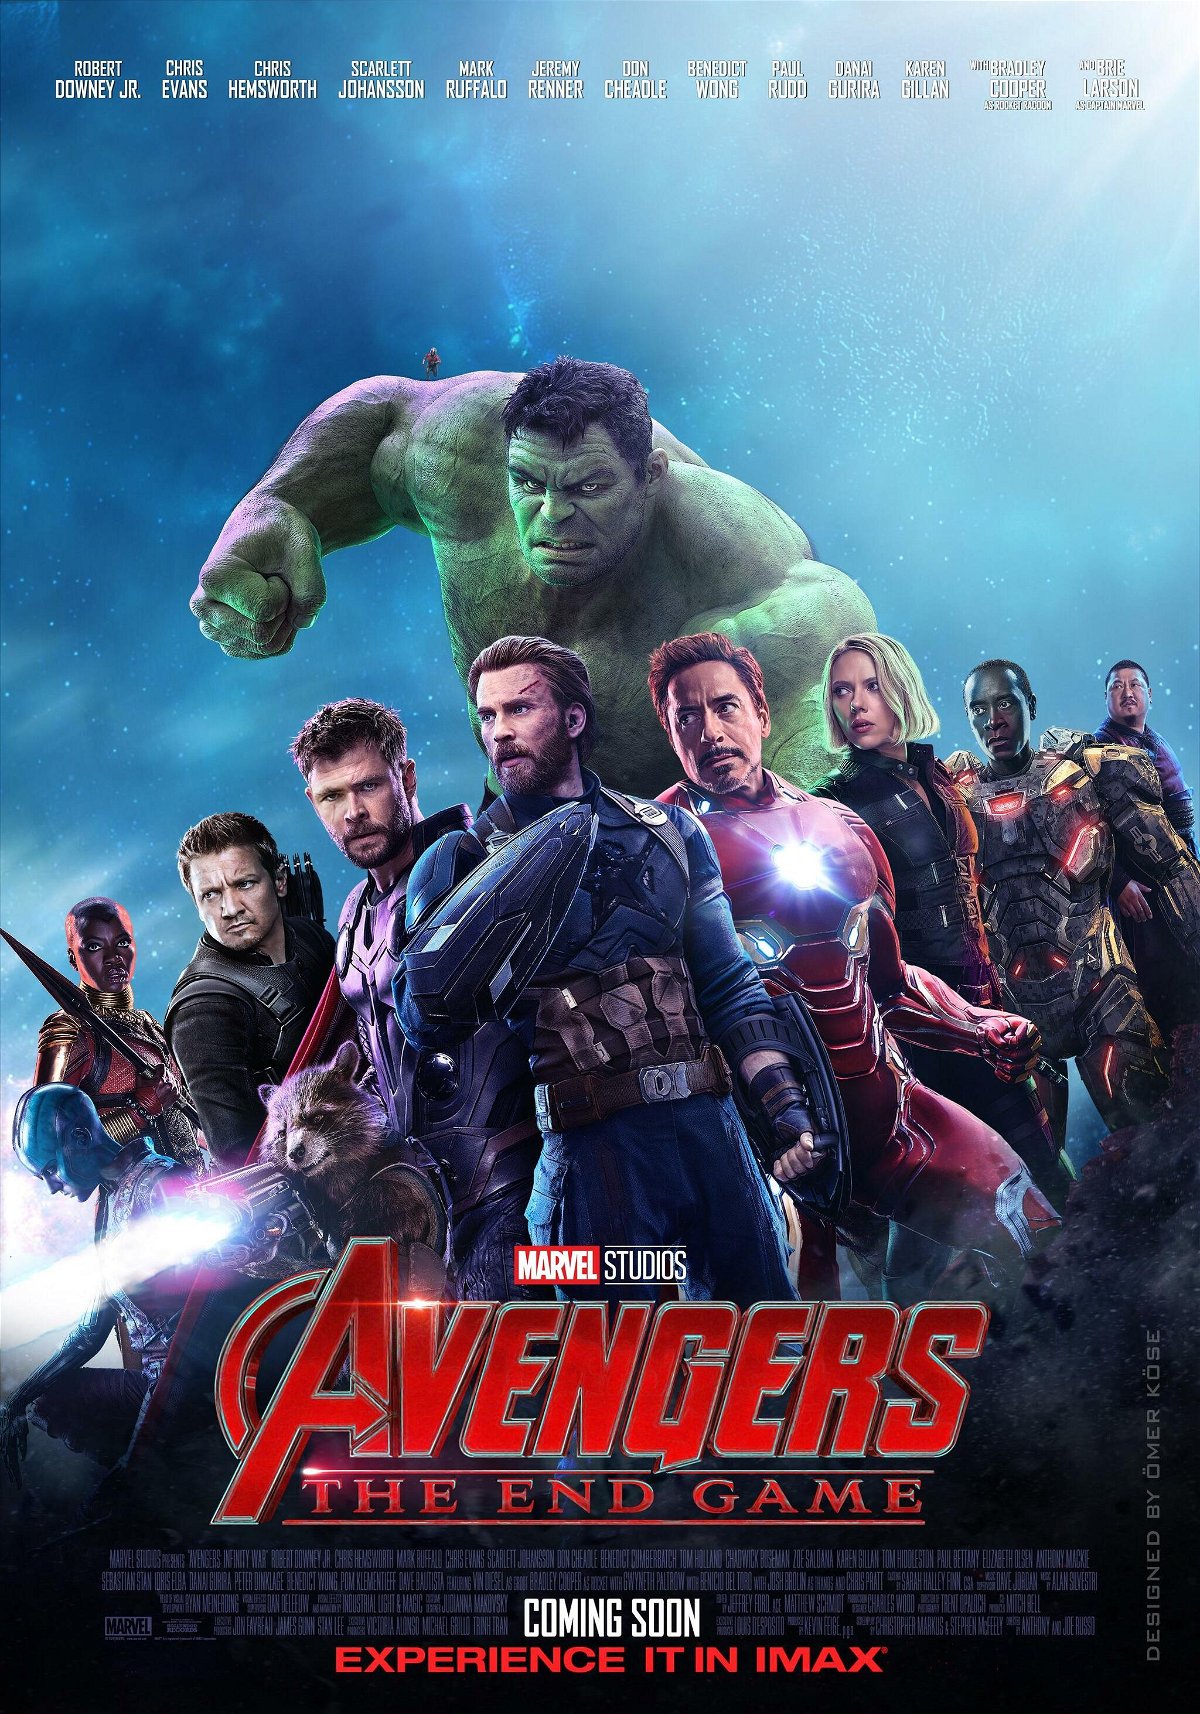 Il poster fan-made di Avengers 4